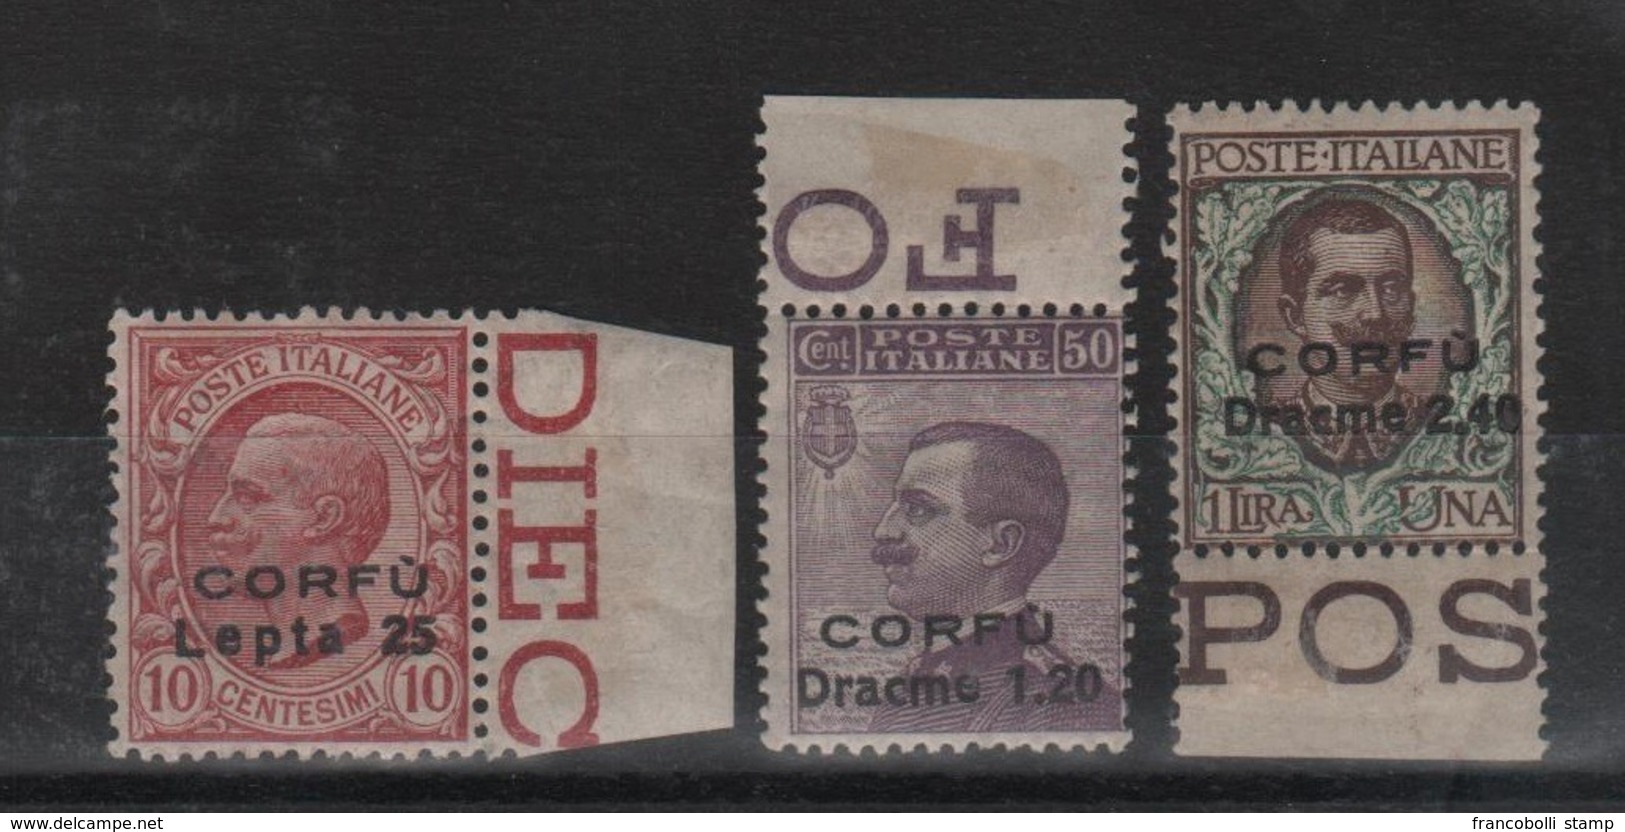 1923 Occupazione Corfù Francobolli D'Italia Sopr. CORFU Serie Cpl MNH B.F. - Corfu